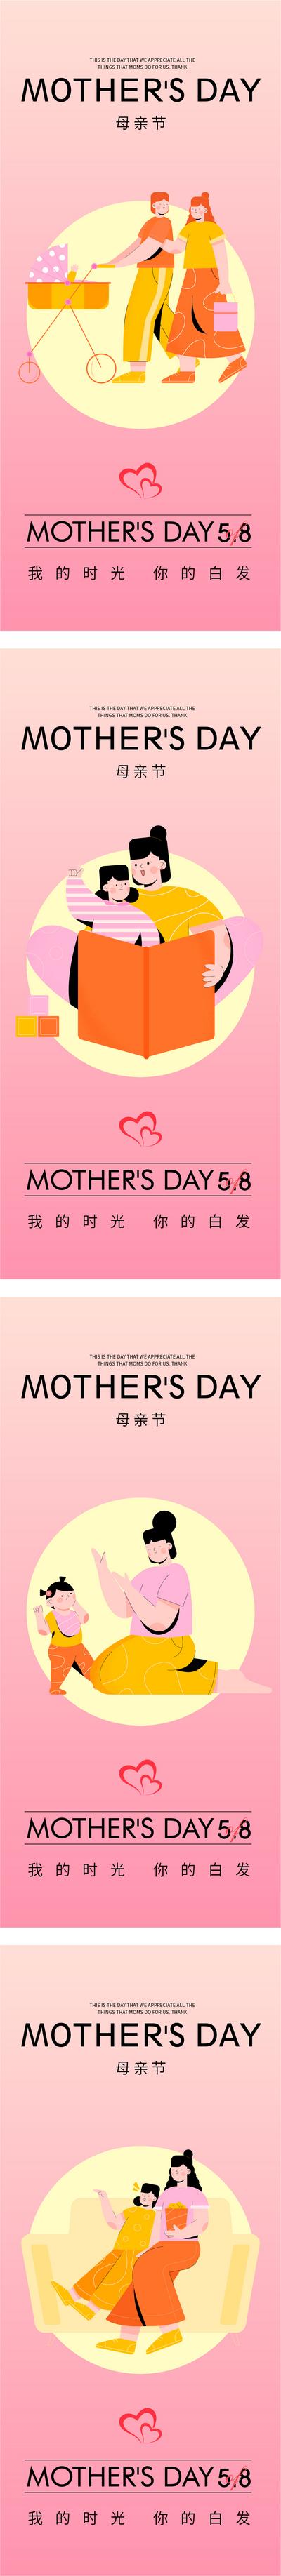 【南门网】海报 地产 公历节日  母亲节   妈妈 母爱   温馨 插画  系列   